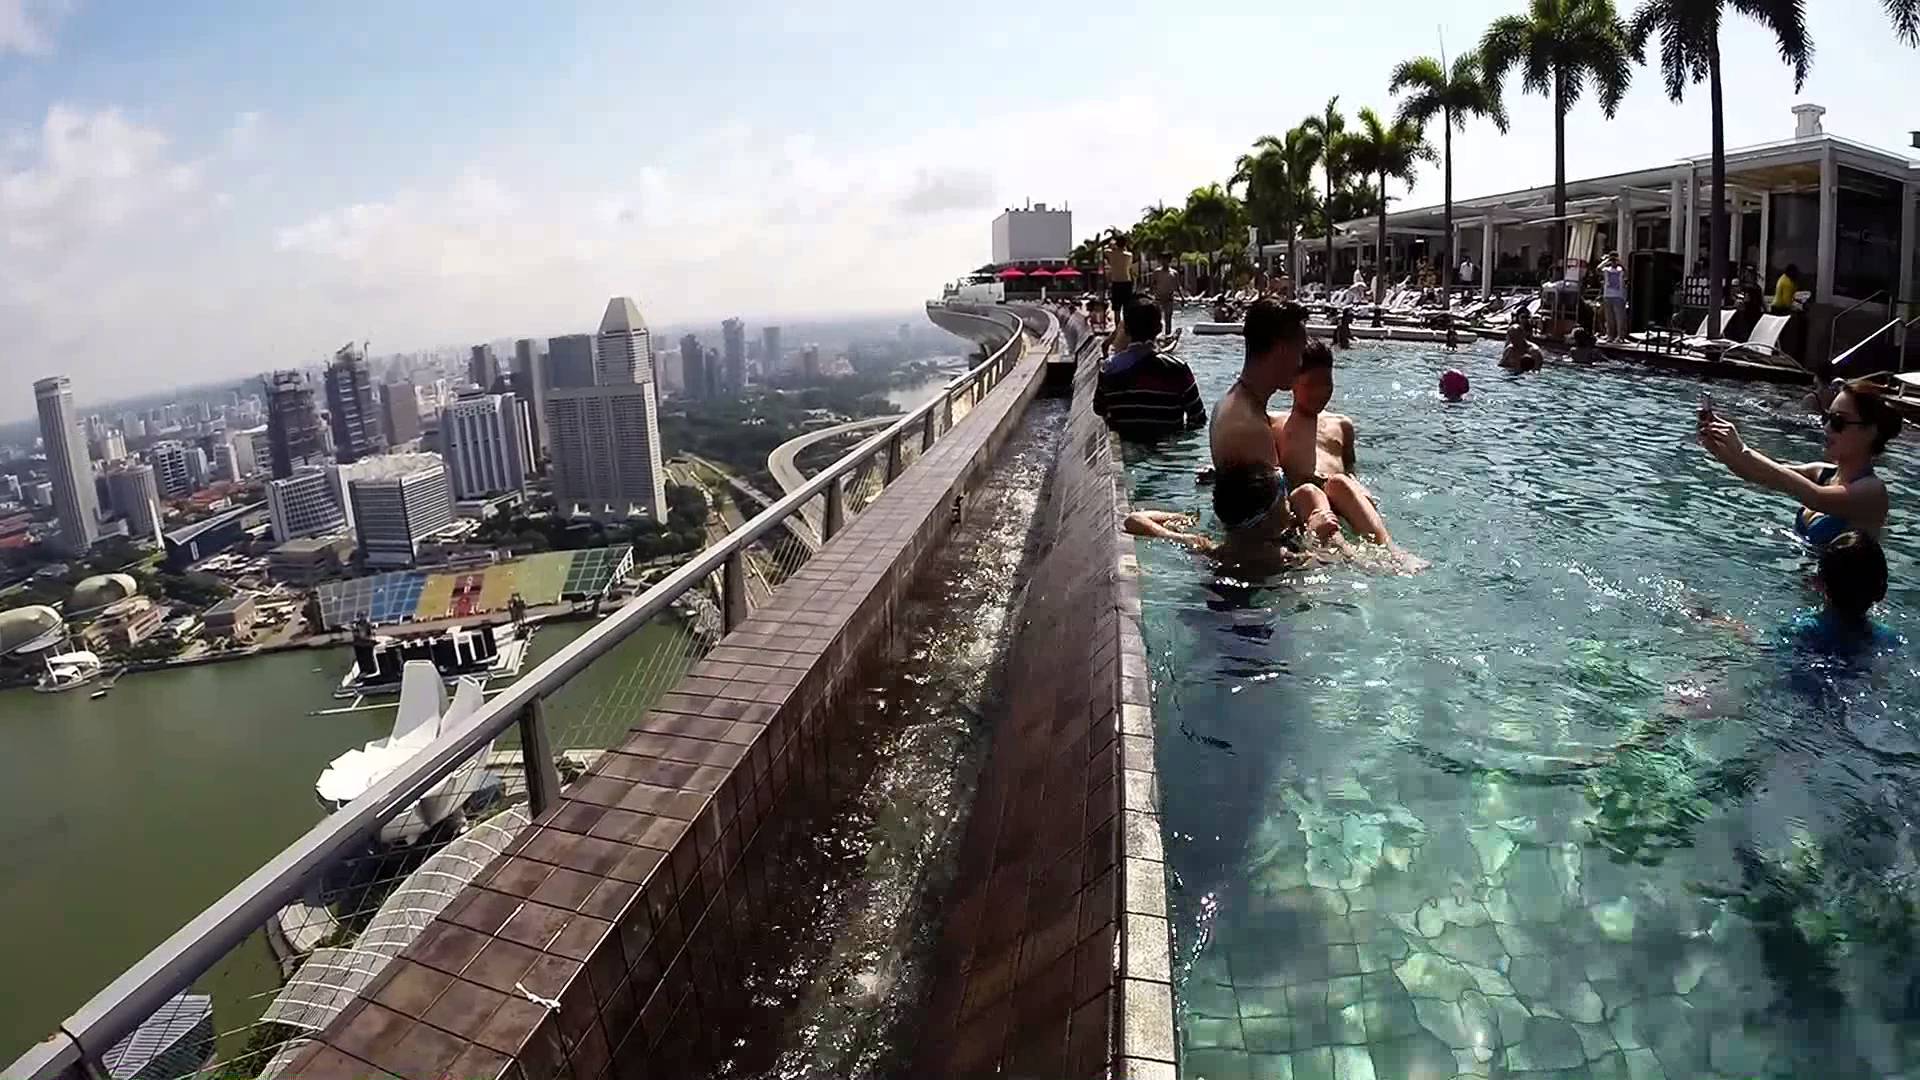 бассейн на крыше небоскреба в сингапуре